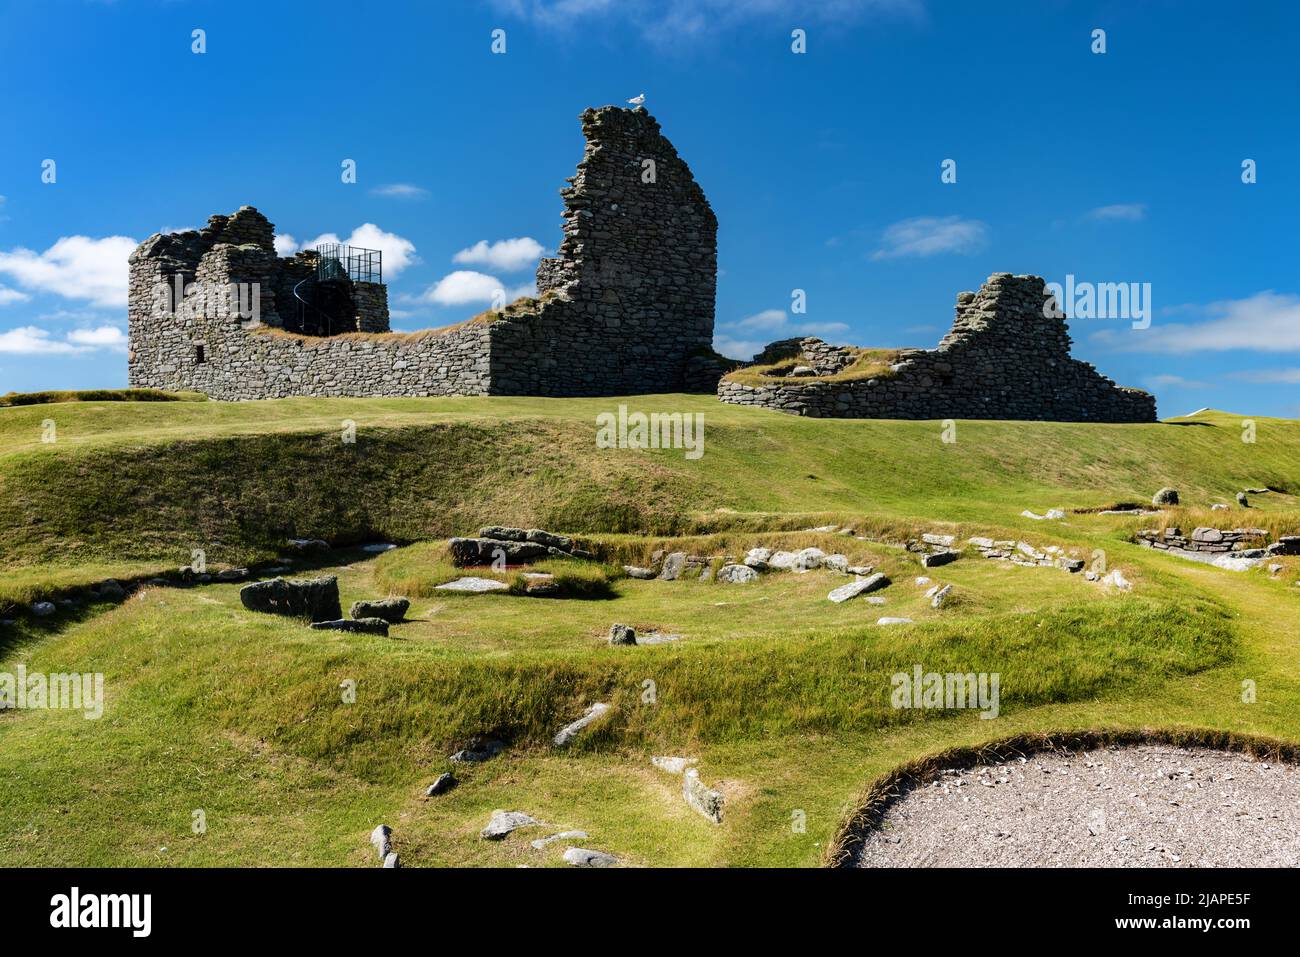 Jarlshof è il sito archeologico preistorico più conosciuto di Shetland, Scozia. Si trova a Sumburgh, Mainland, Shetland ed è stato descritto come "uno dei siti archeologici più notevoli mai scavati nelle isole britanniche". Contiene resti risalenti al 2500 a.C. fino al 17th° secolo d.C. Foto Stock